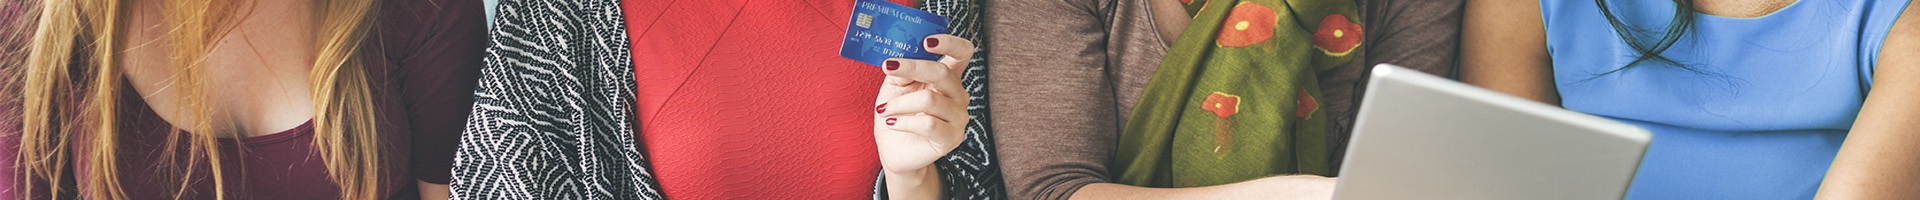 Tax Free - Mujeres sentadas en el sofa de casa sonriendo con tarjetas en la mano mirando la tablet